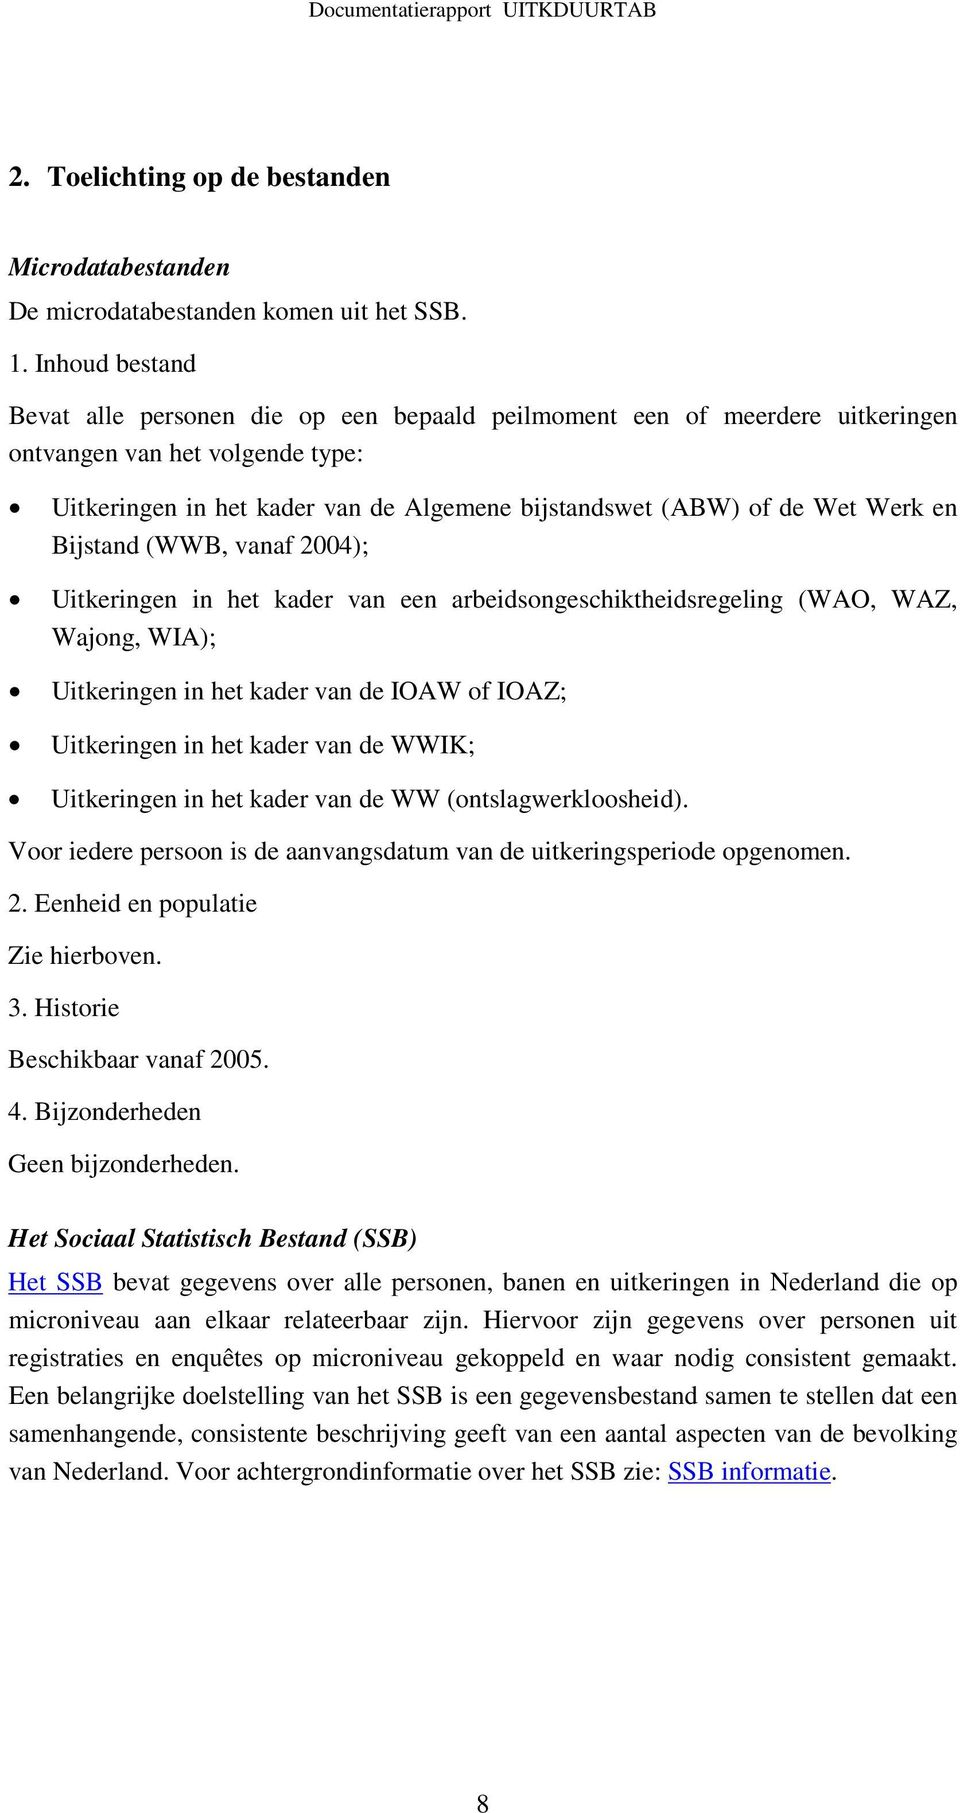 Werk en Bijstand (WWB, vanaf 2004); Uitkeringen in het kader van een arbeidsongeschiktheidsregeling (WAO, WAZ, Wajong, WIA); Uitkeringen in het kader van de IOAW of IOAZ; Uitkeringen in het kader van